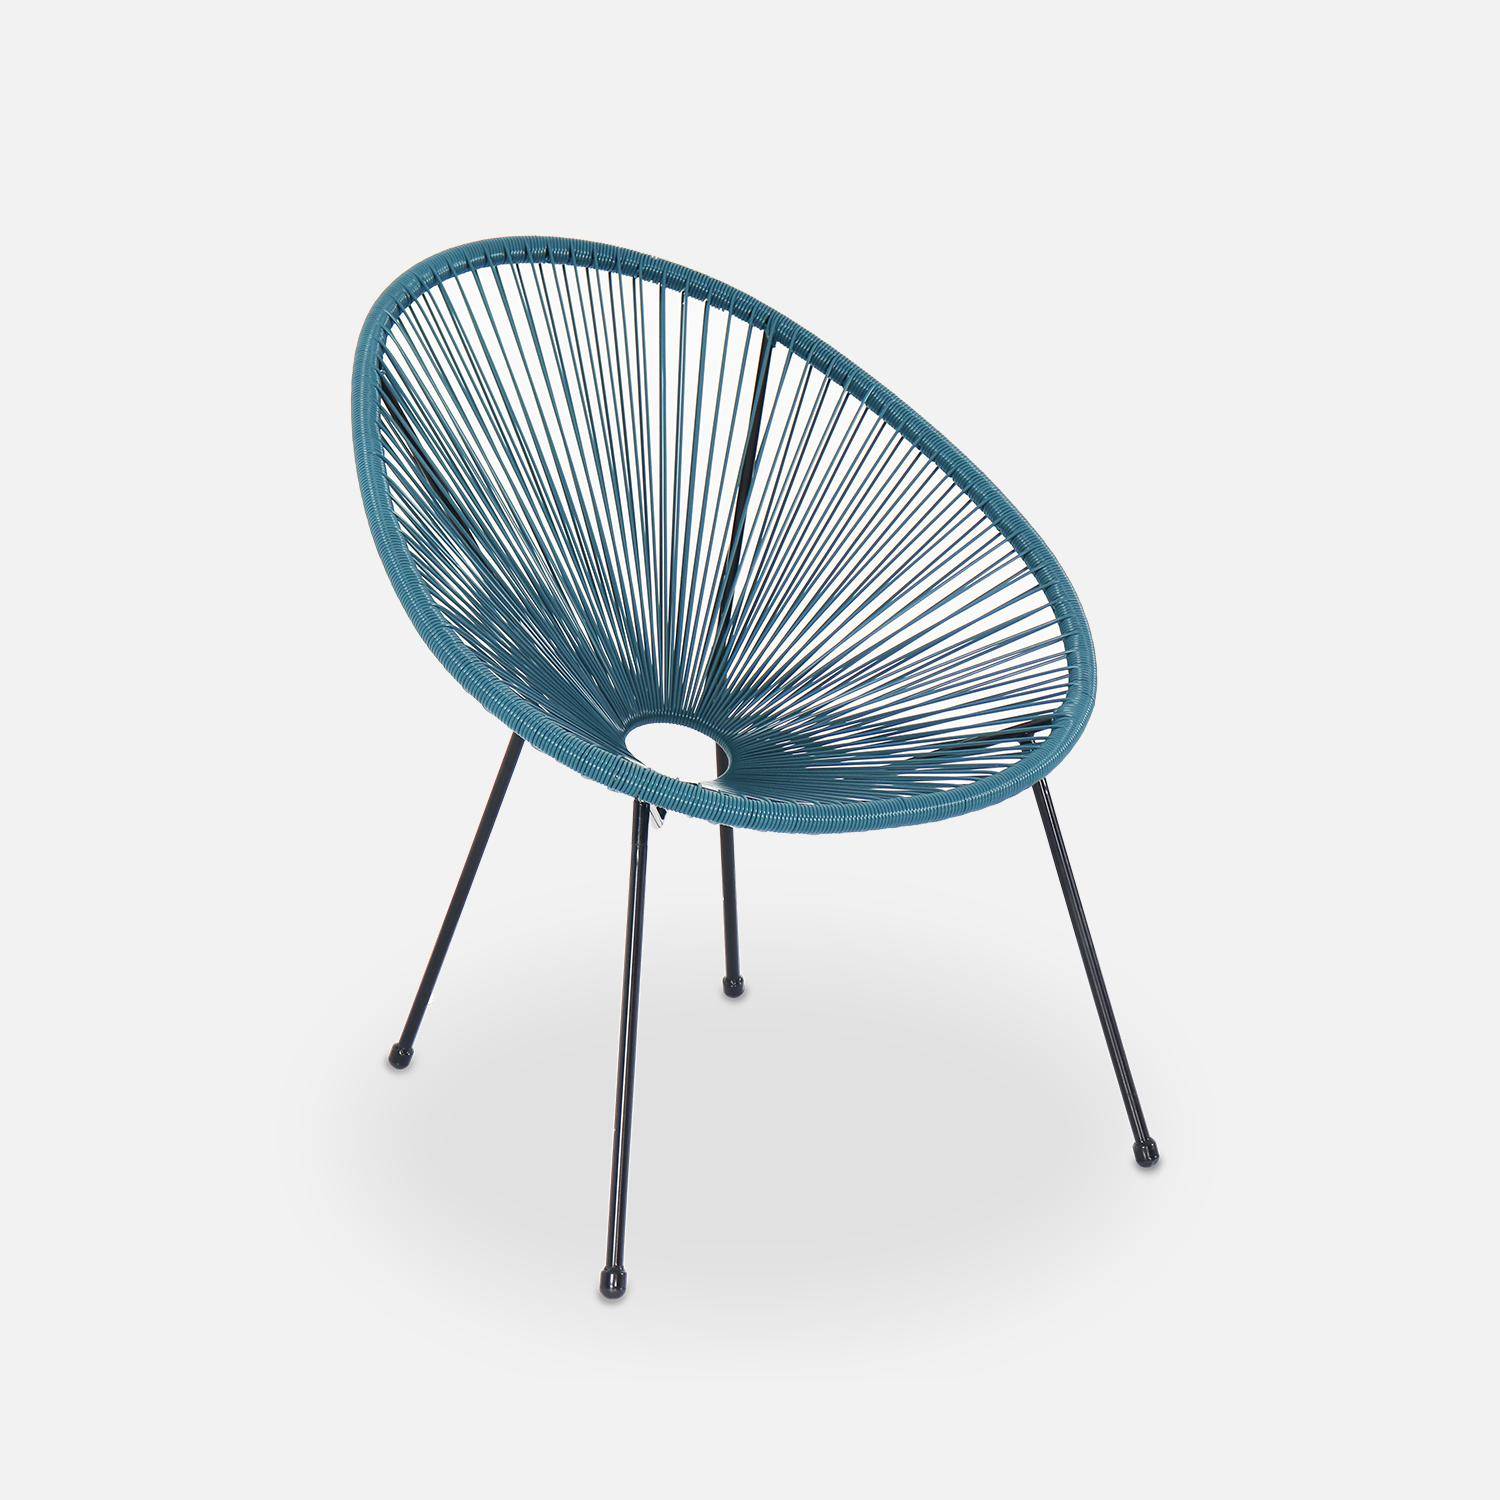 ACAPULCO stoel ei-vormig -Donker Turquoise- Stoel 4 poten retro design, plastic koorden, binnen/buiten Photo2